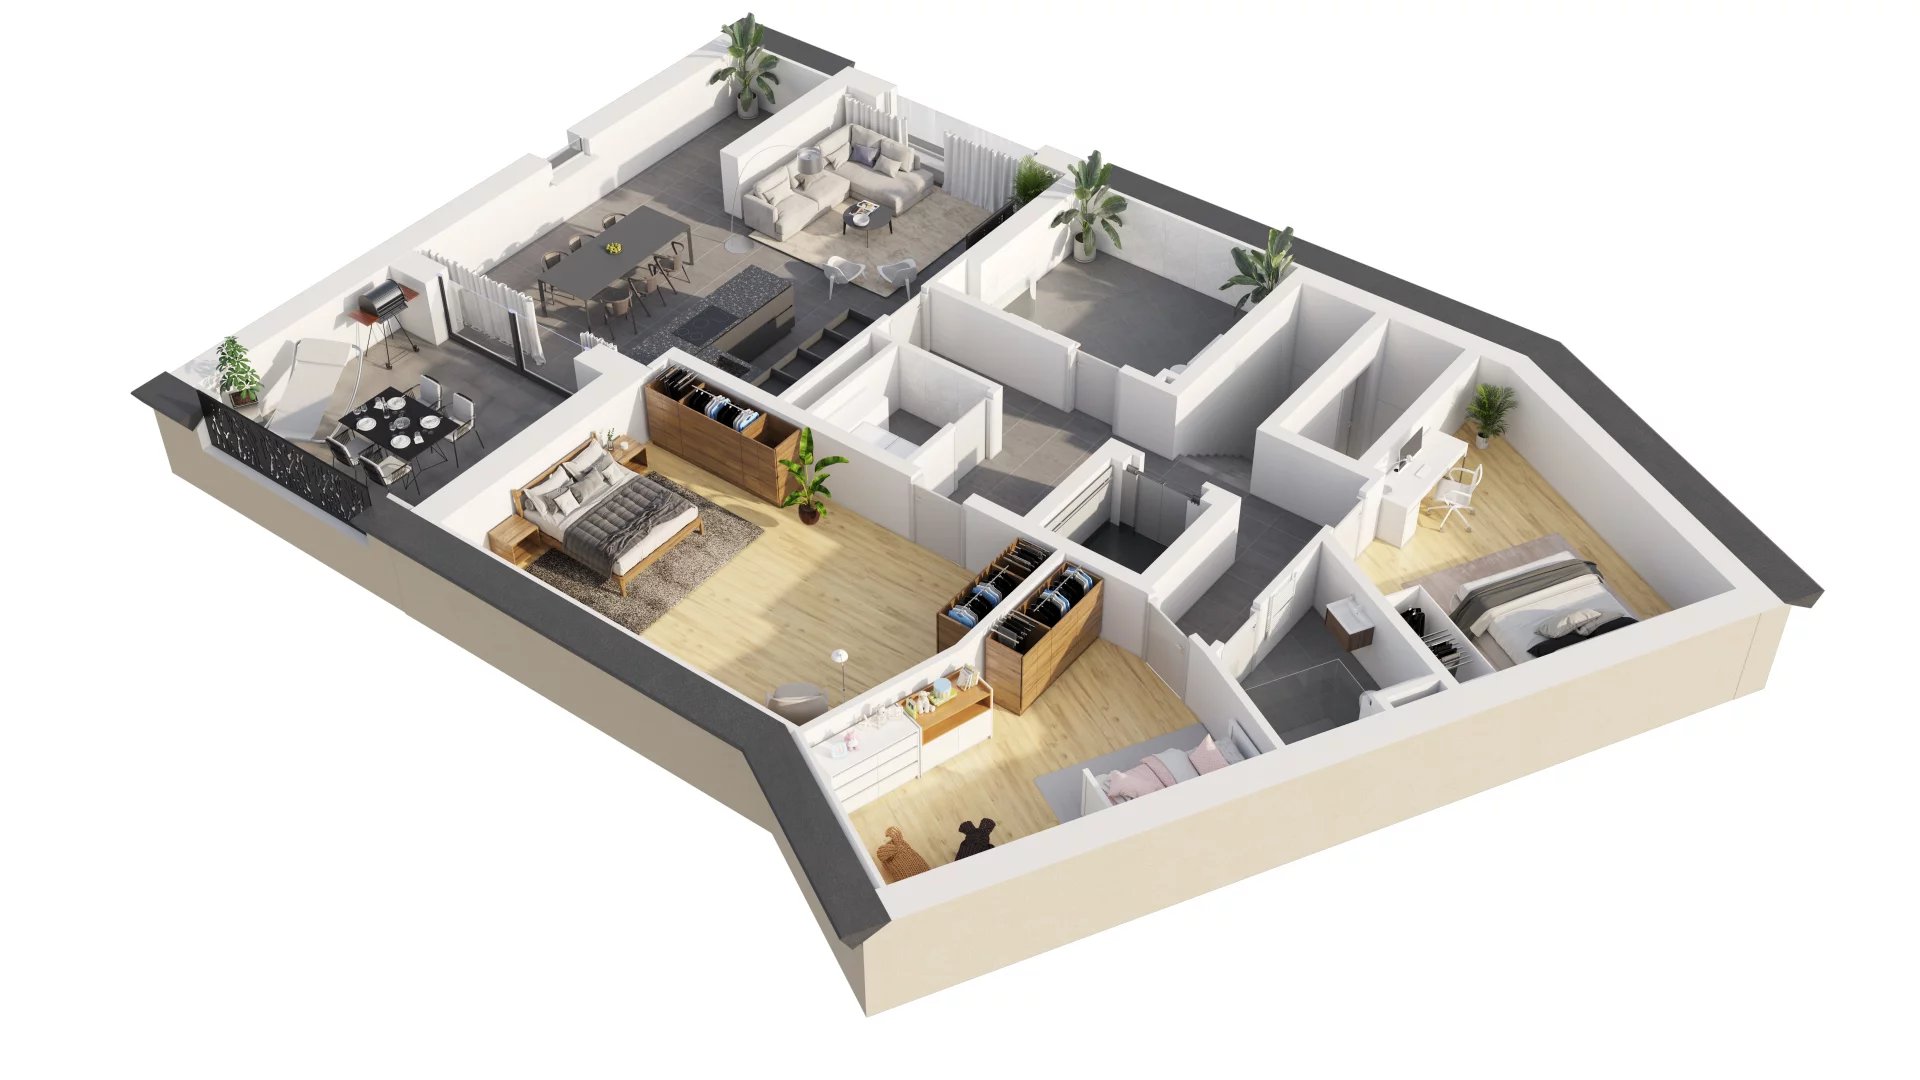 Penthouse - 3 bedrooms - terrace - indoor parking